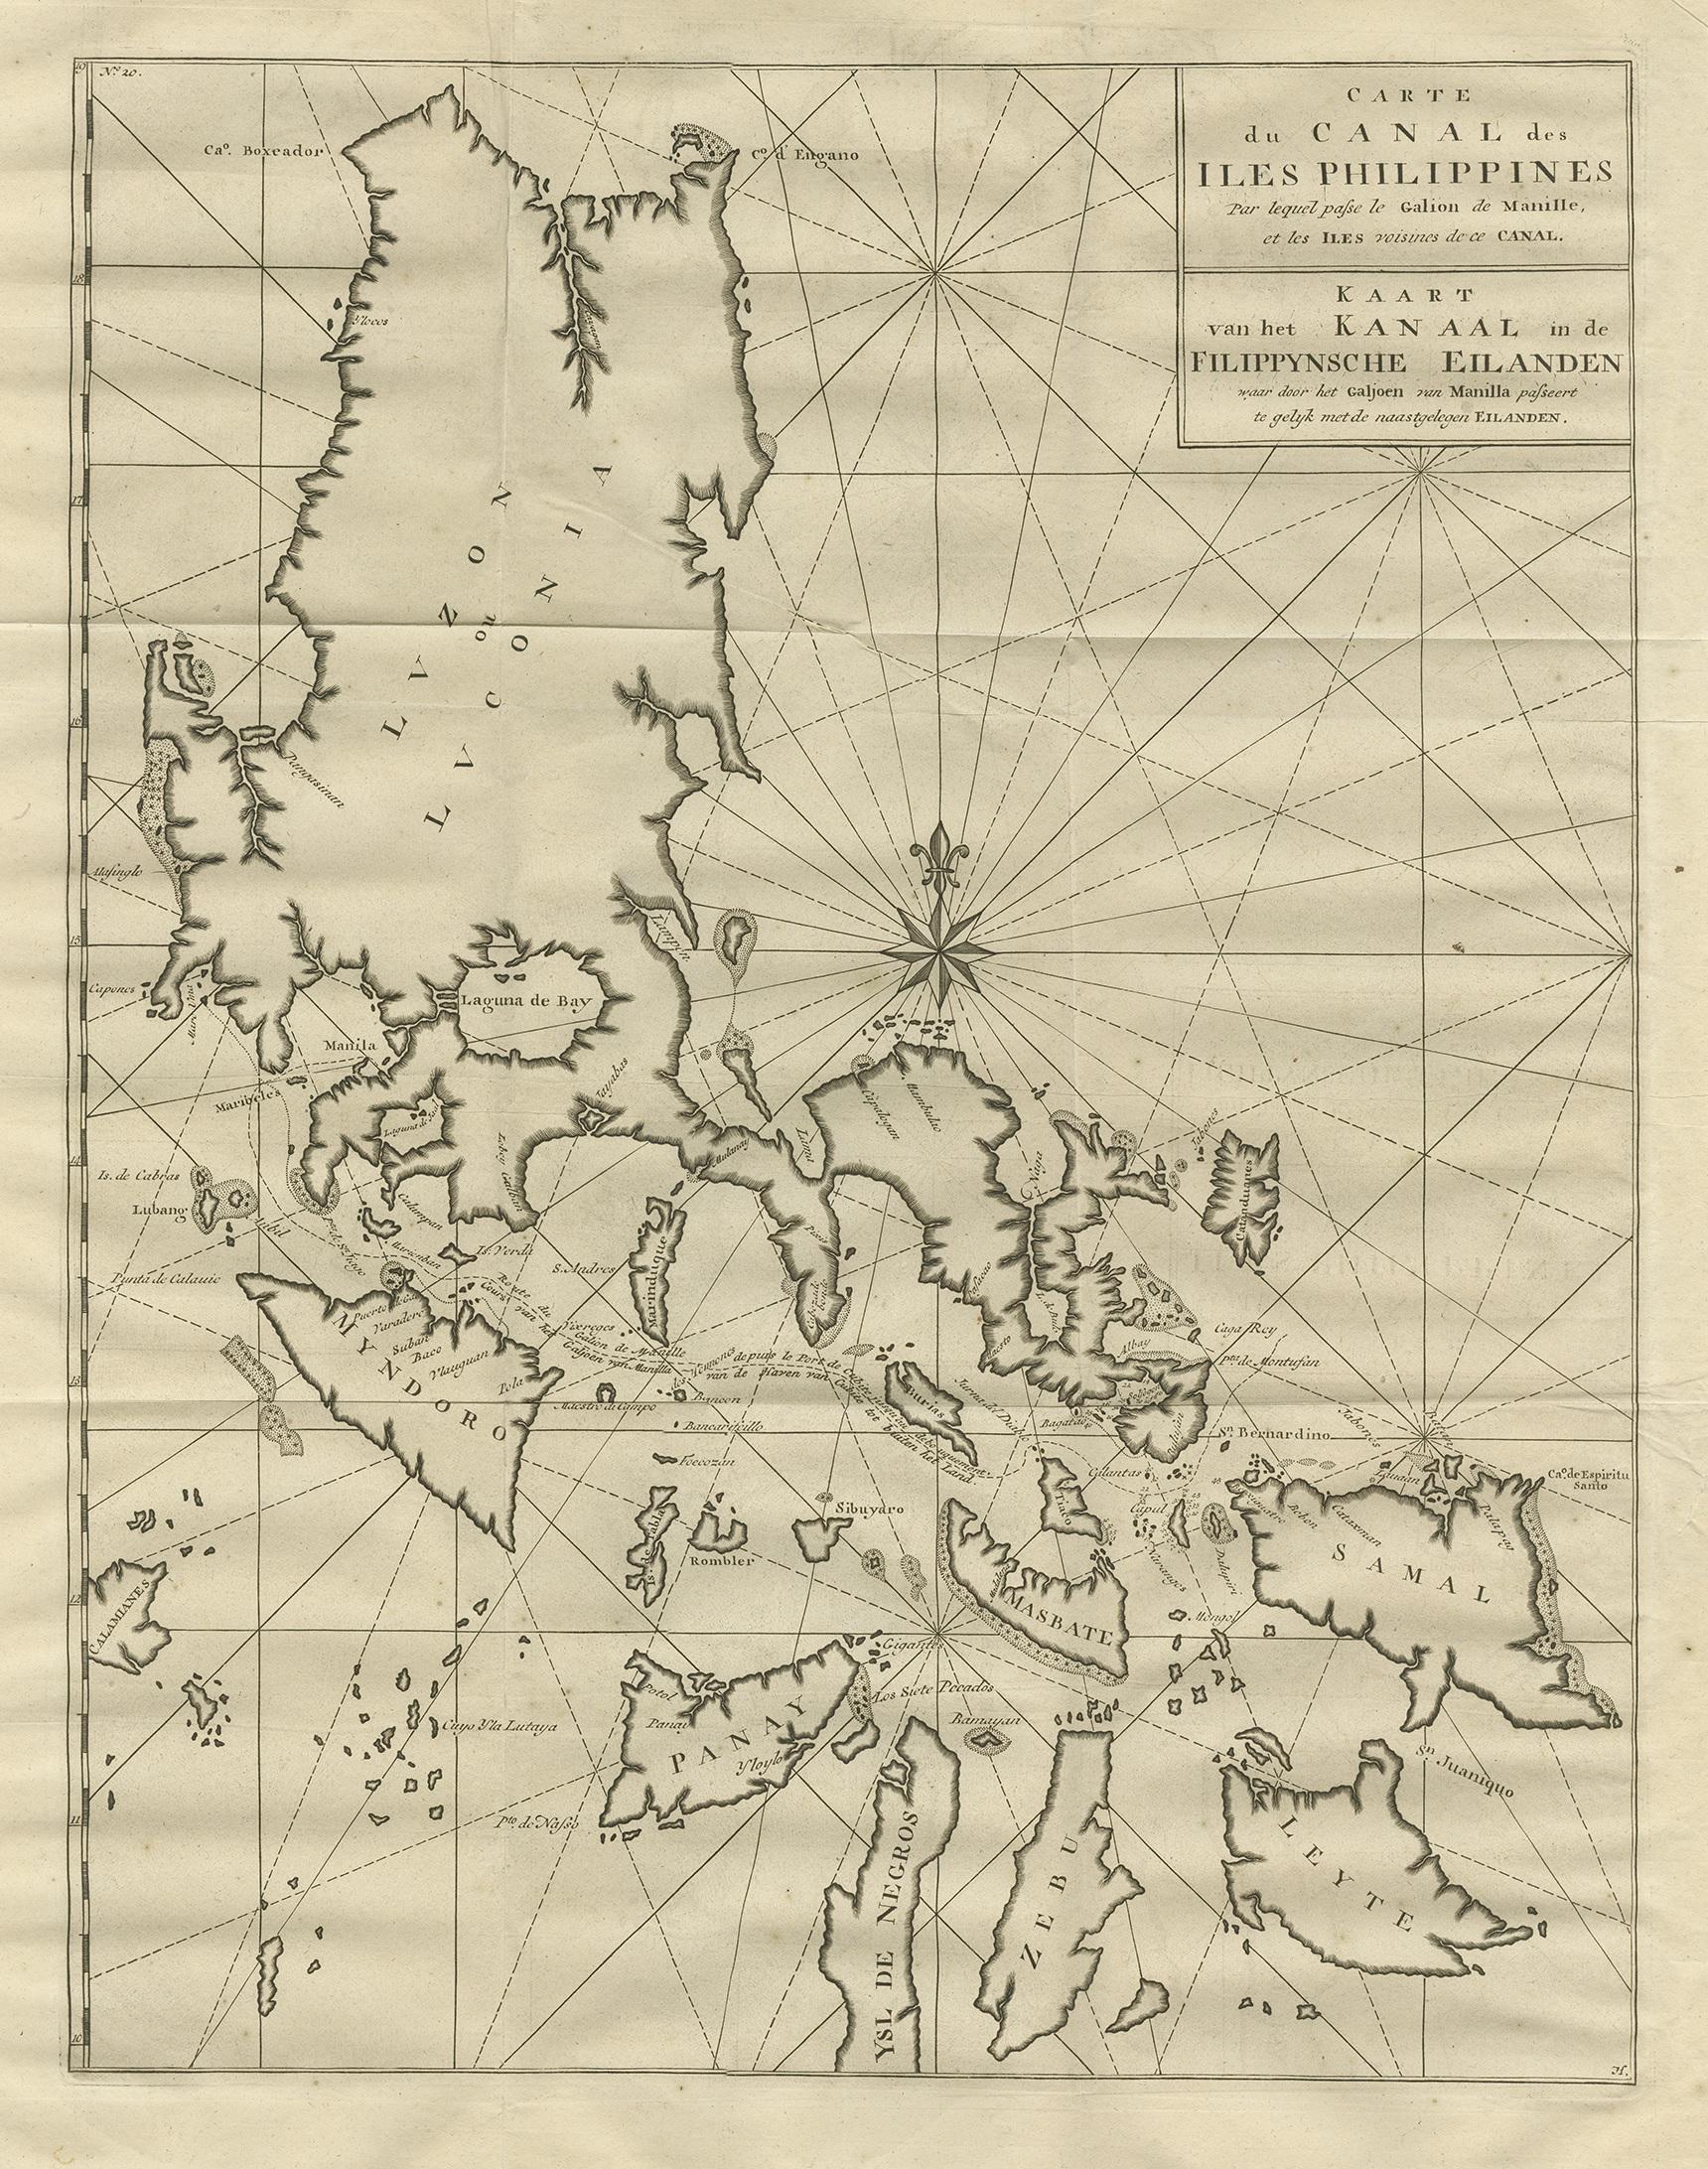 Antique map titled 'Carte du Canal des Iles Philippines - Kaart van het Kanaal in de Filippynsche Eilanden'. Large detailed chart of the islands of the Philippines. One of the most detailed charts of the Philippines of the era. Shows Islands, bays,